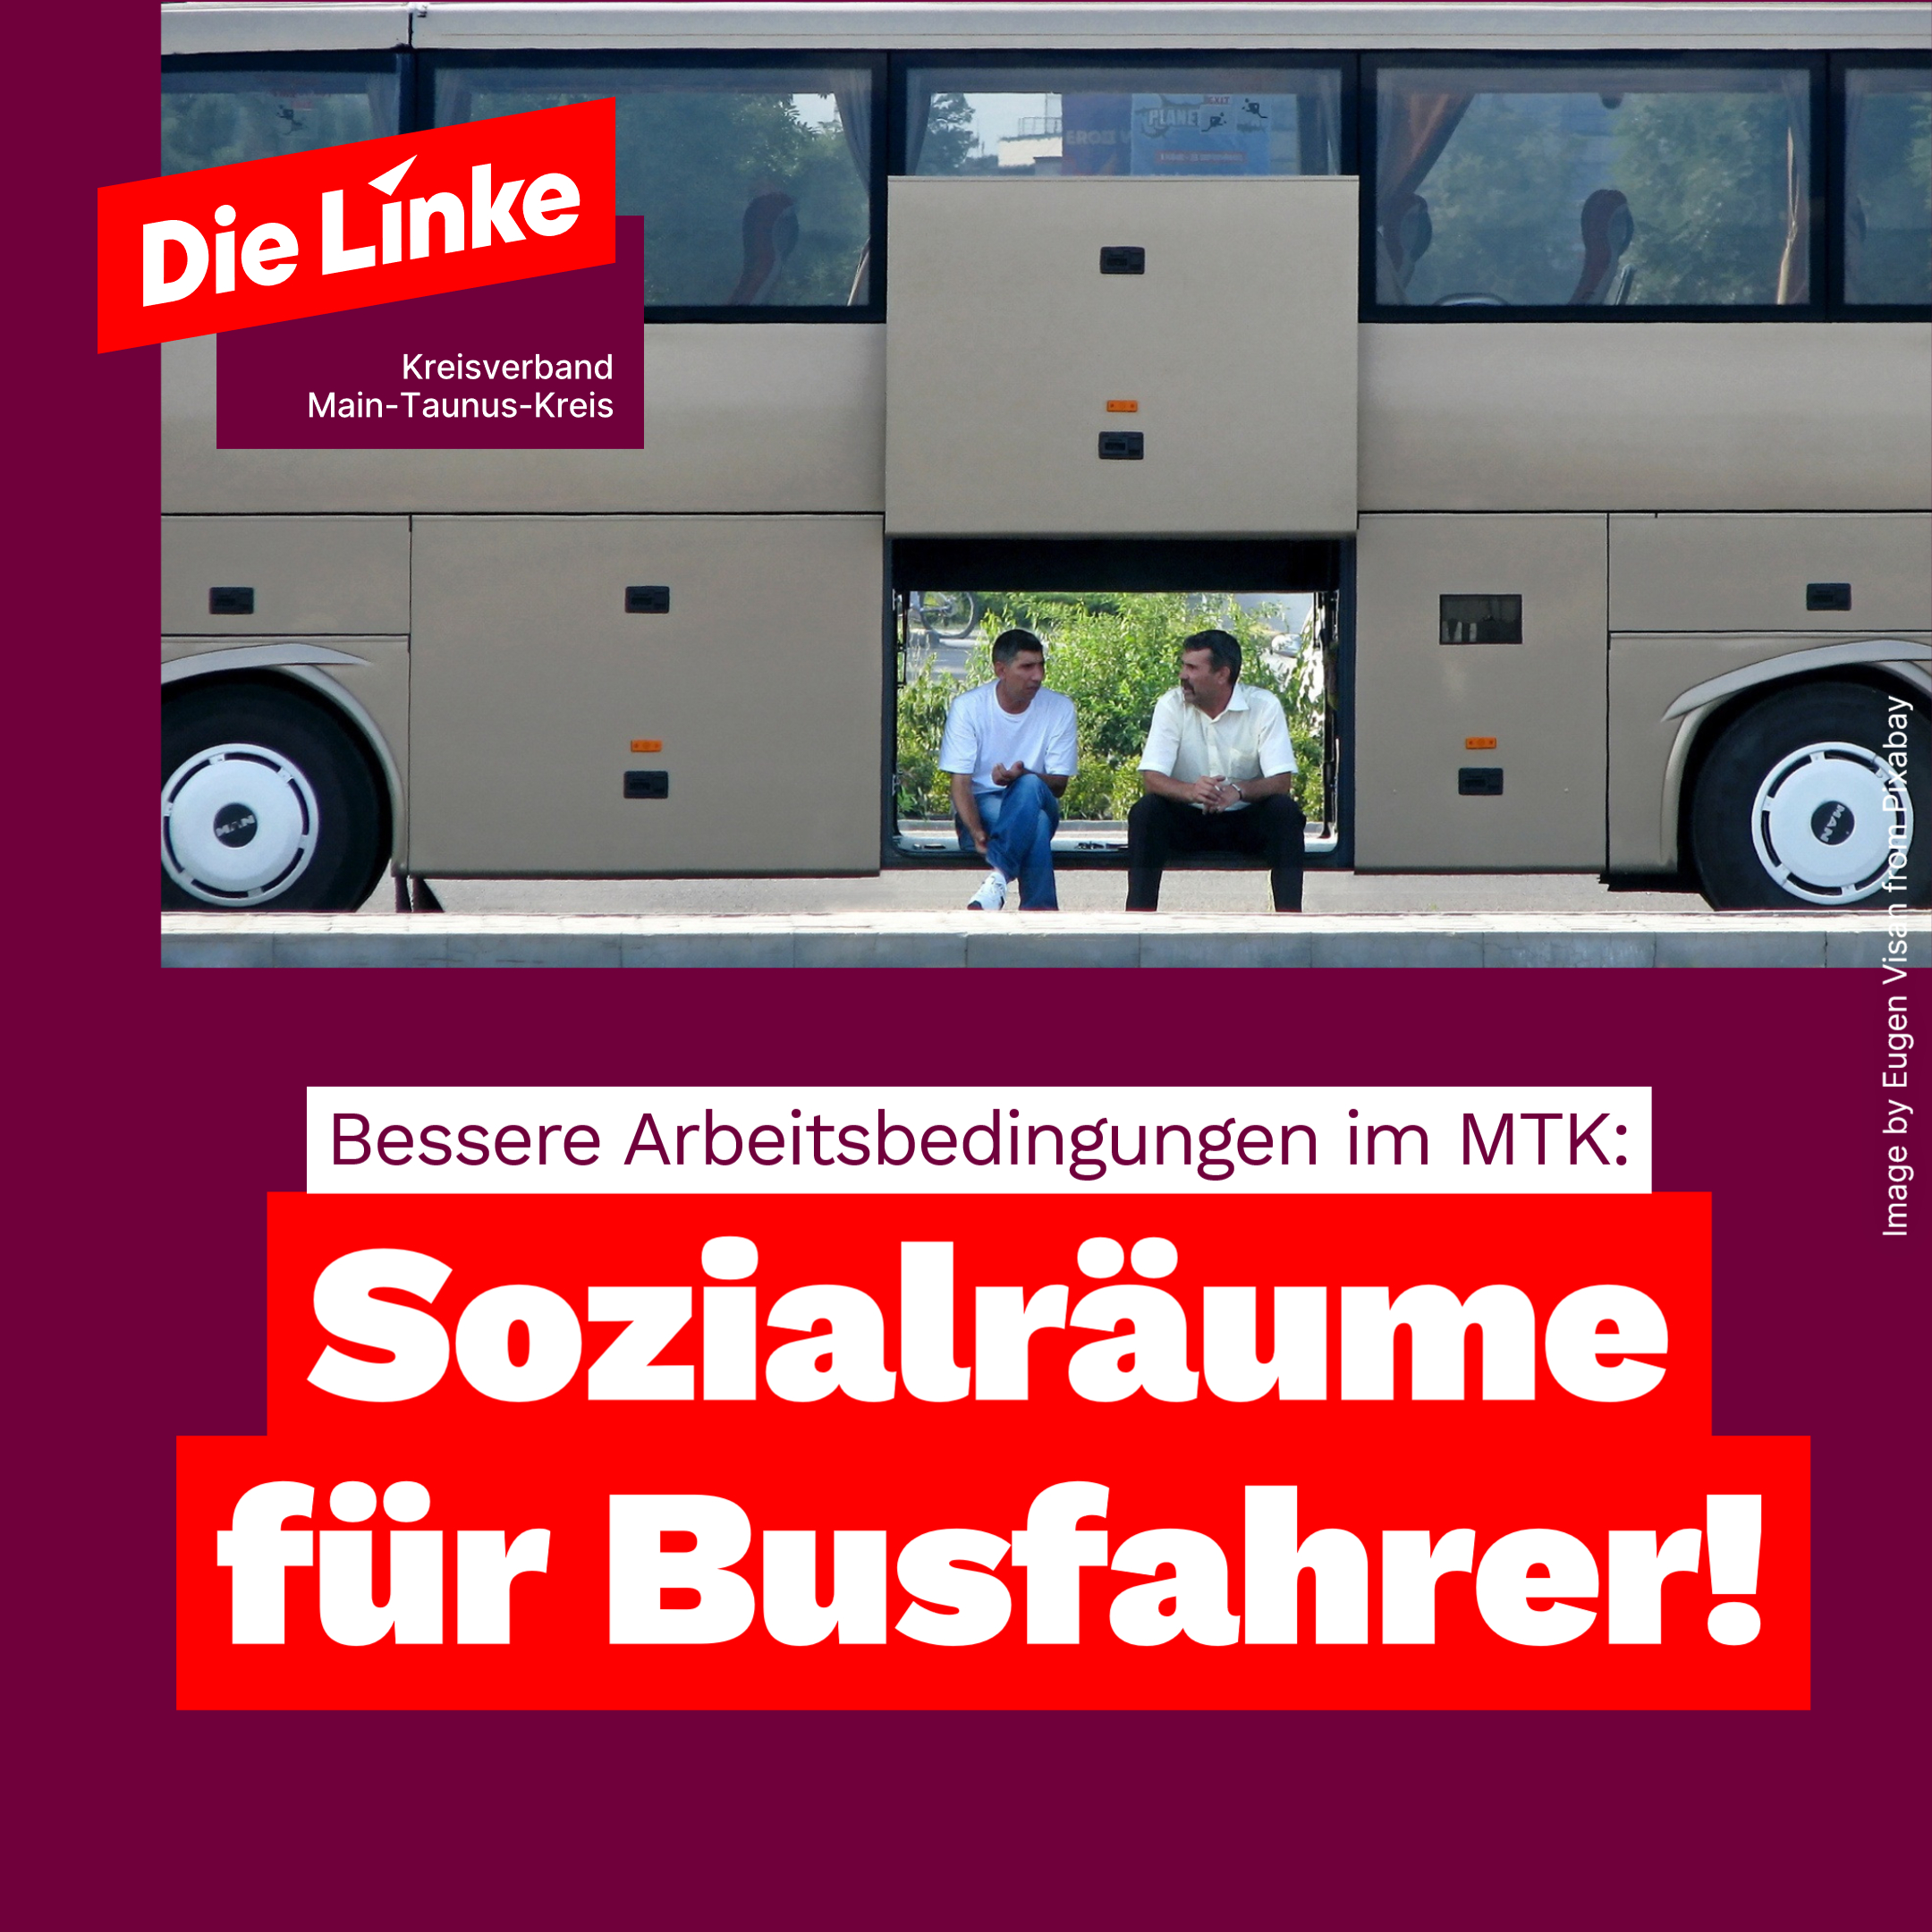 Zwei Busfahrer sitzen während ihrer Pause in einer Ladeluke des Busses. Dazu der Text: Bessere Arbeitsbedingungen im MTK: Sozialräume für Busfahrer!